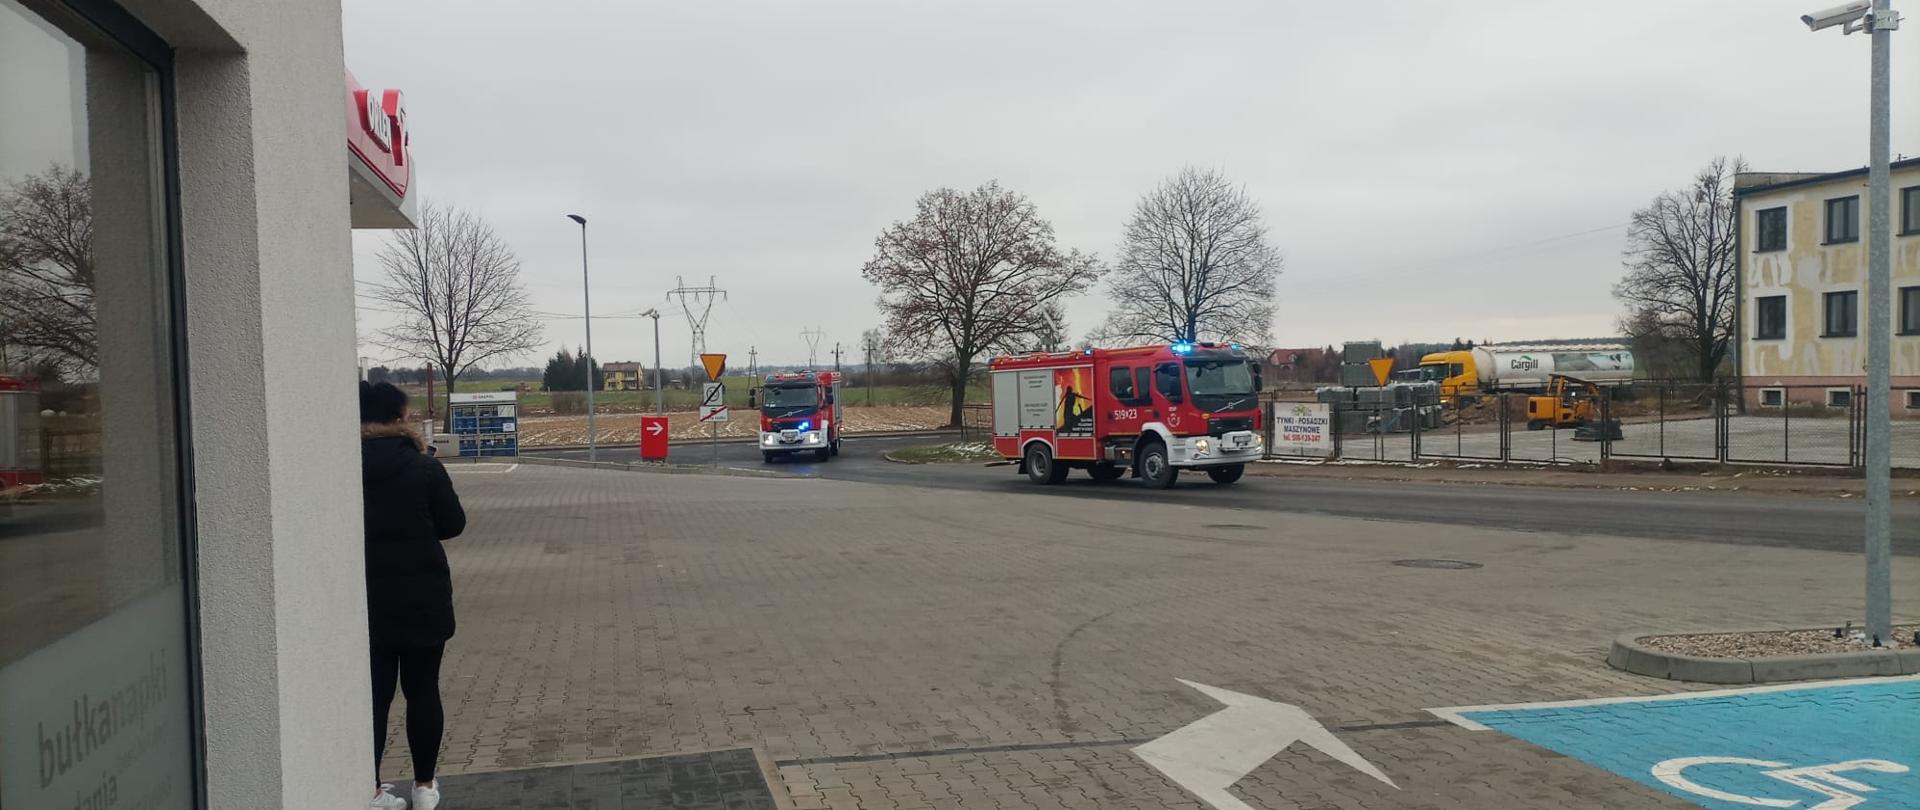 Dwa ciężarowe samochody pożarnicze wjeżdżają na teren stacji Paliw Orlen. Są to ćwiczenia.